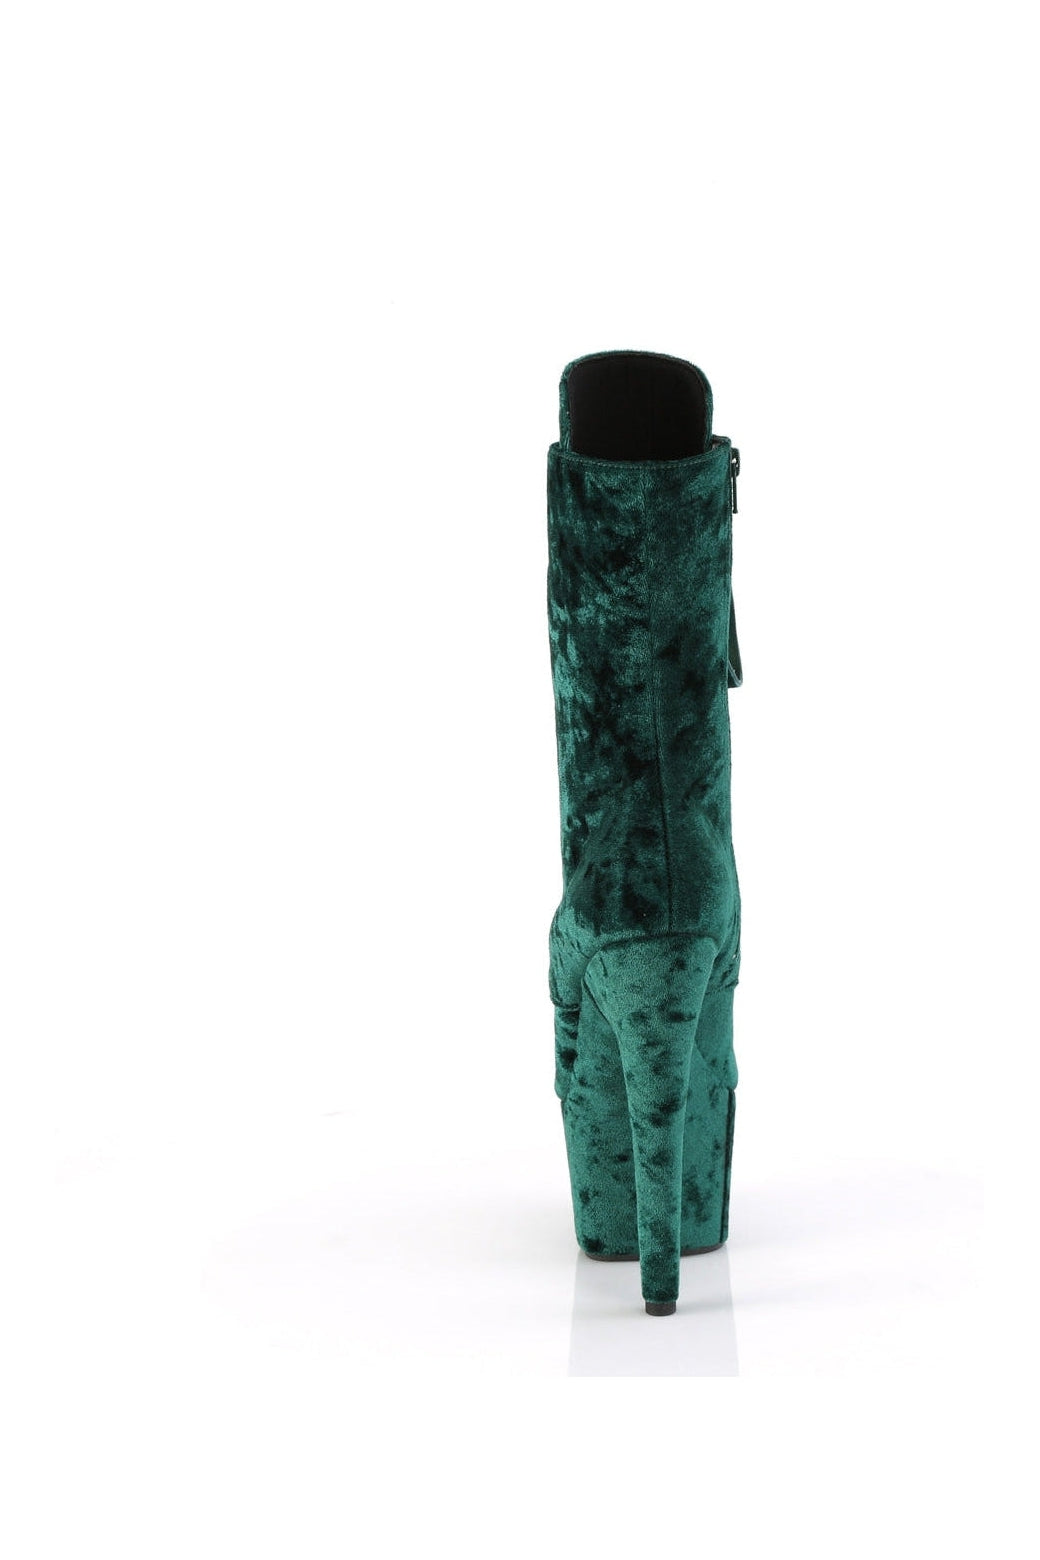 ADORE-1045VEL Green Velvet Ankle Boot